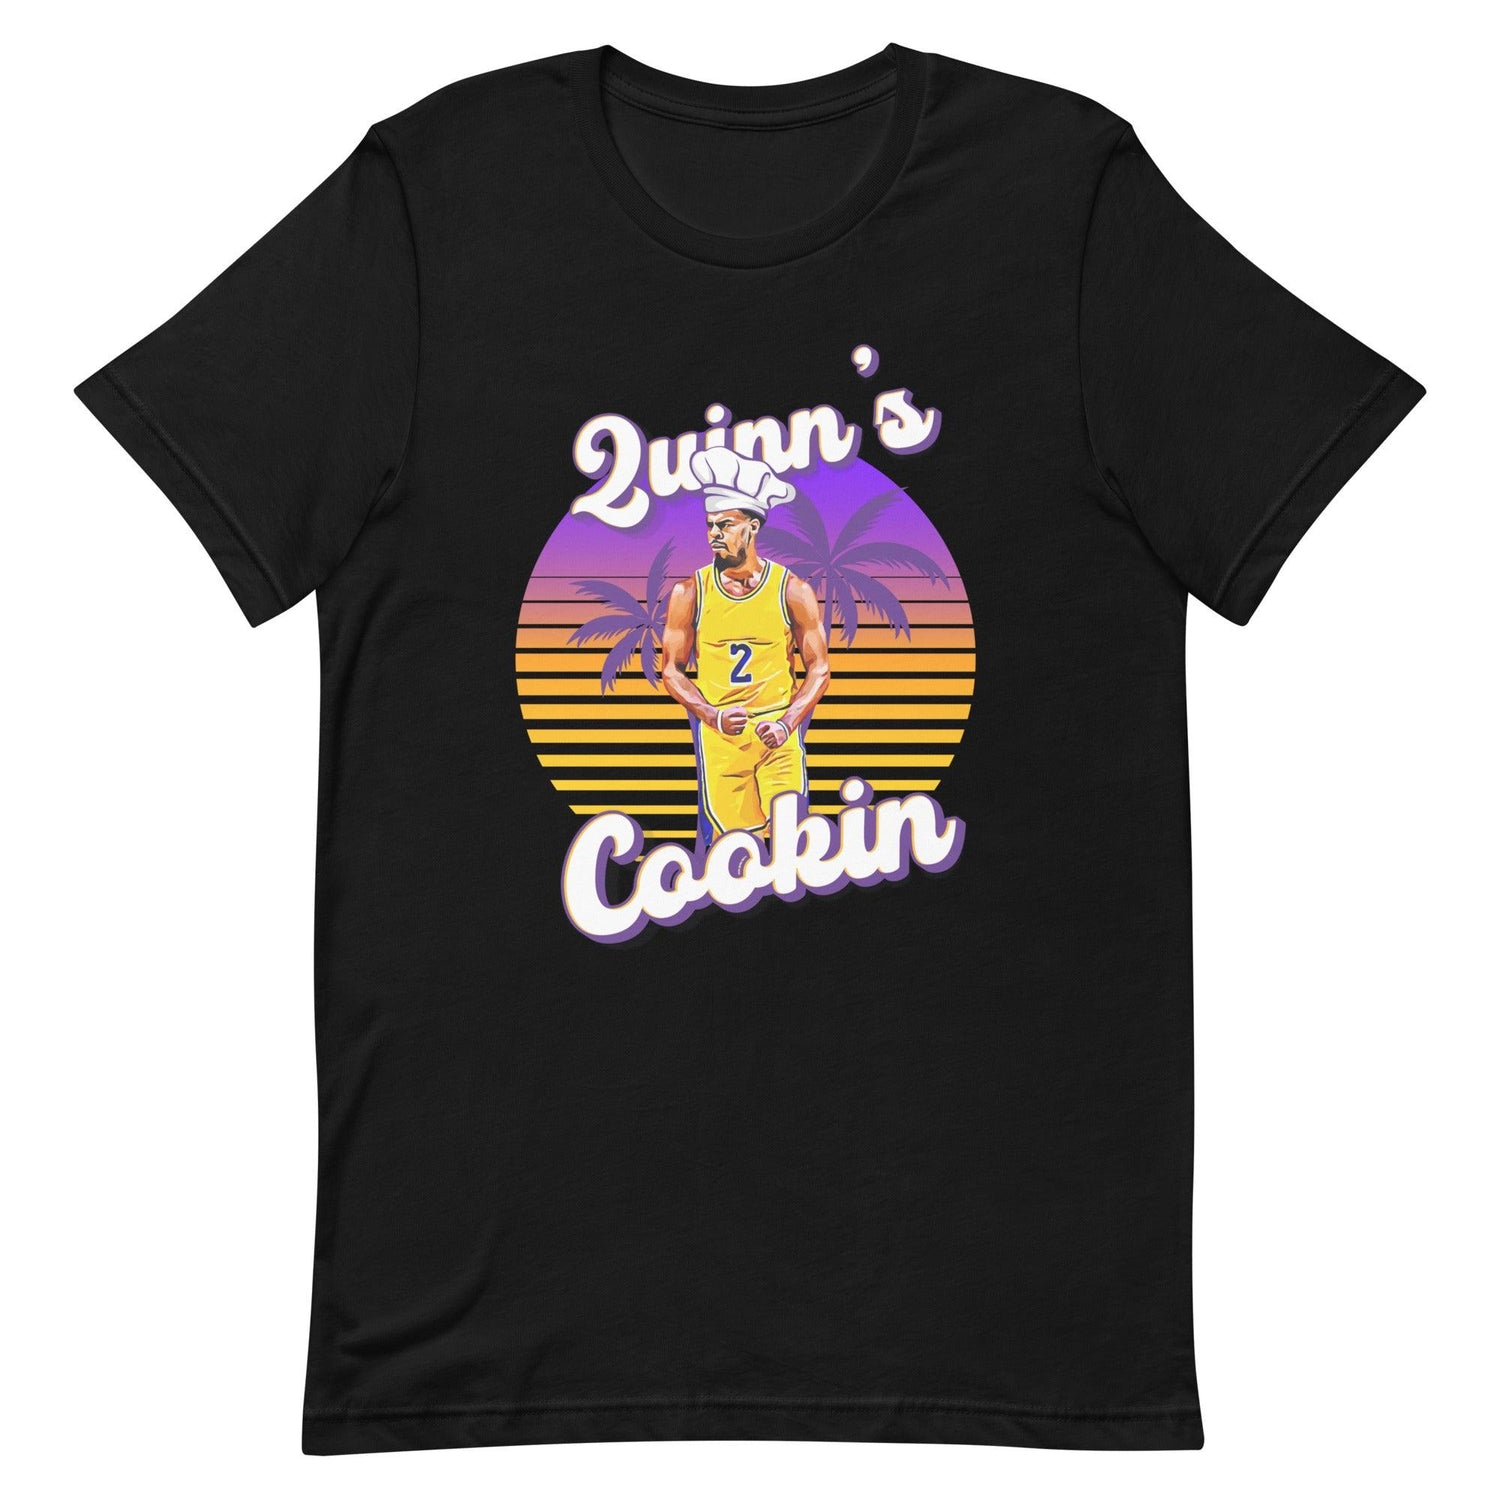 Quinn Cook "Quinns Cookin" t-shirt - Fan Arch